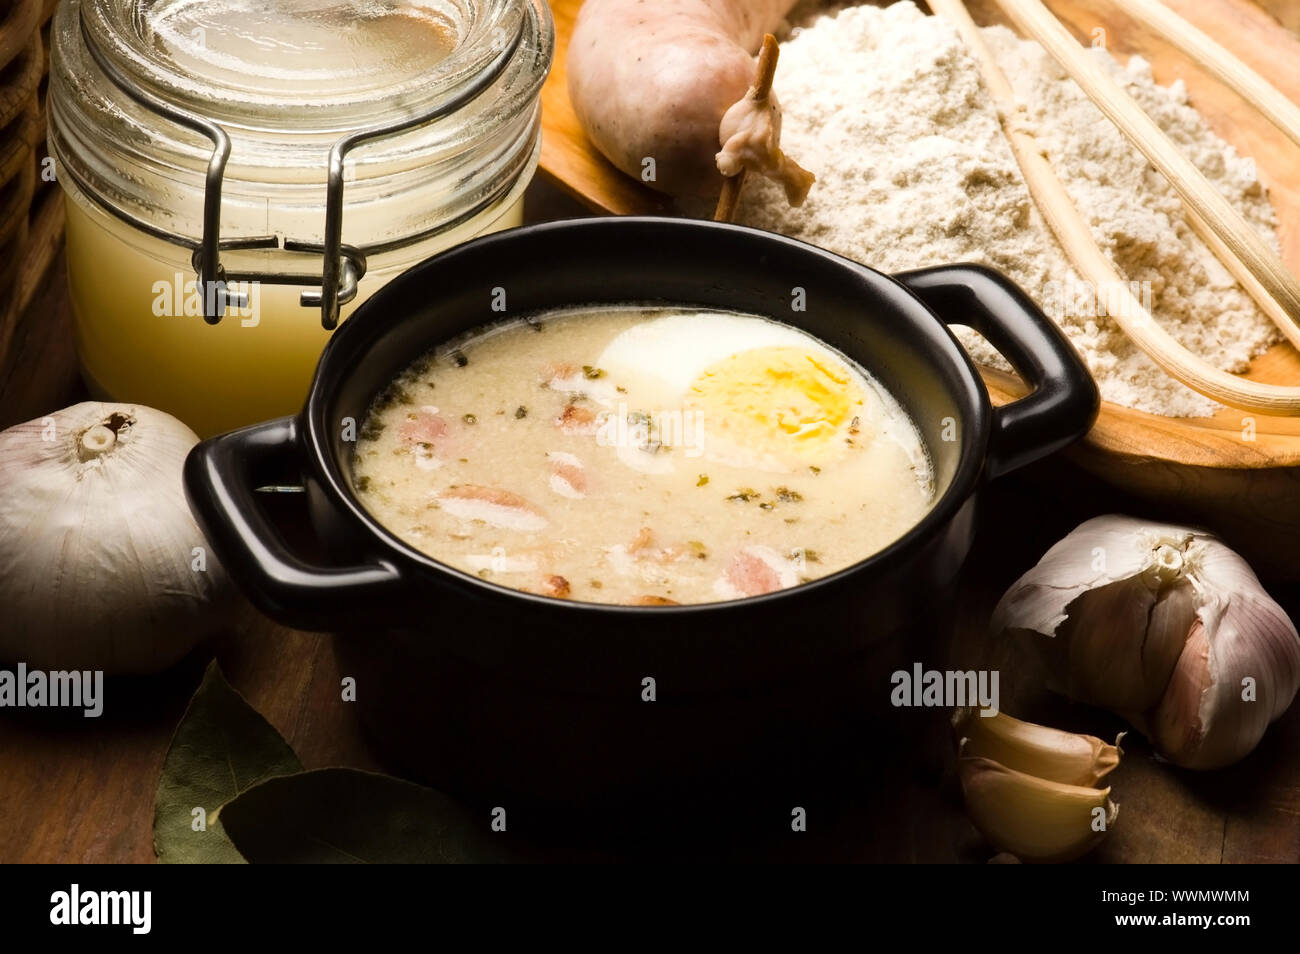 Sourdough, zur, zurek - composante d'une soupe traditionnelle polonaise Banque D'Images